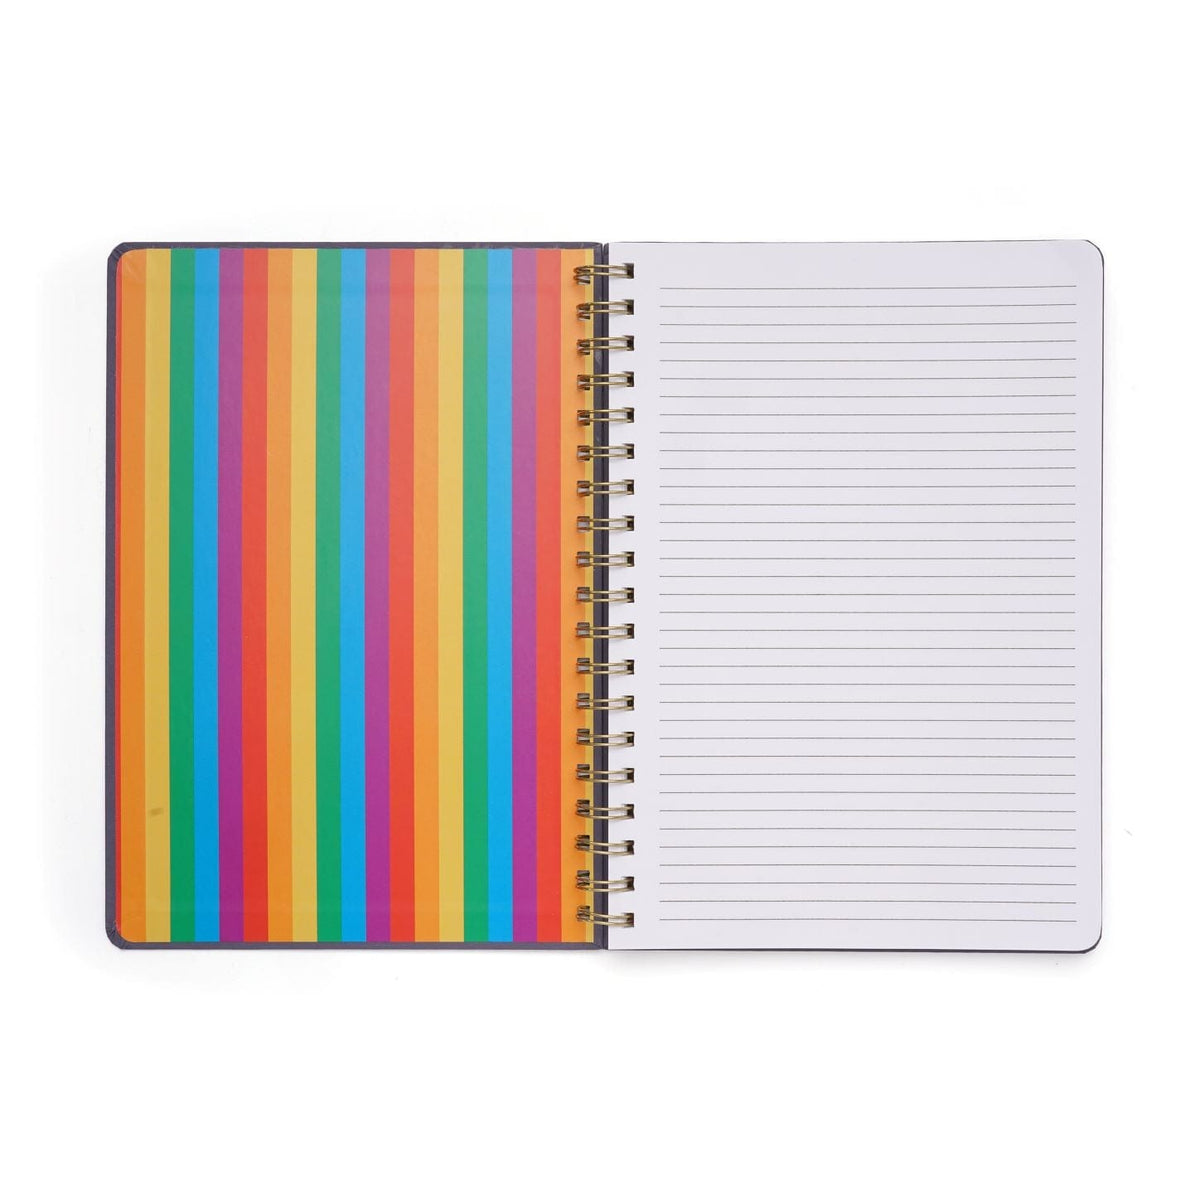 Spiral Rainbow Human Notebook Gartner Studios Notebooks 60589